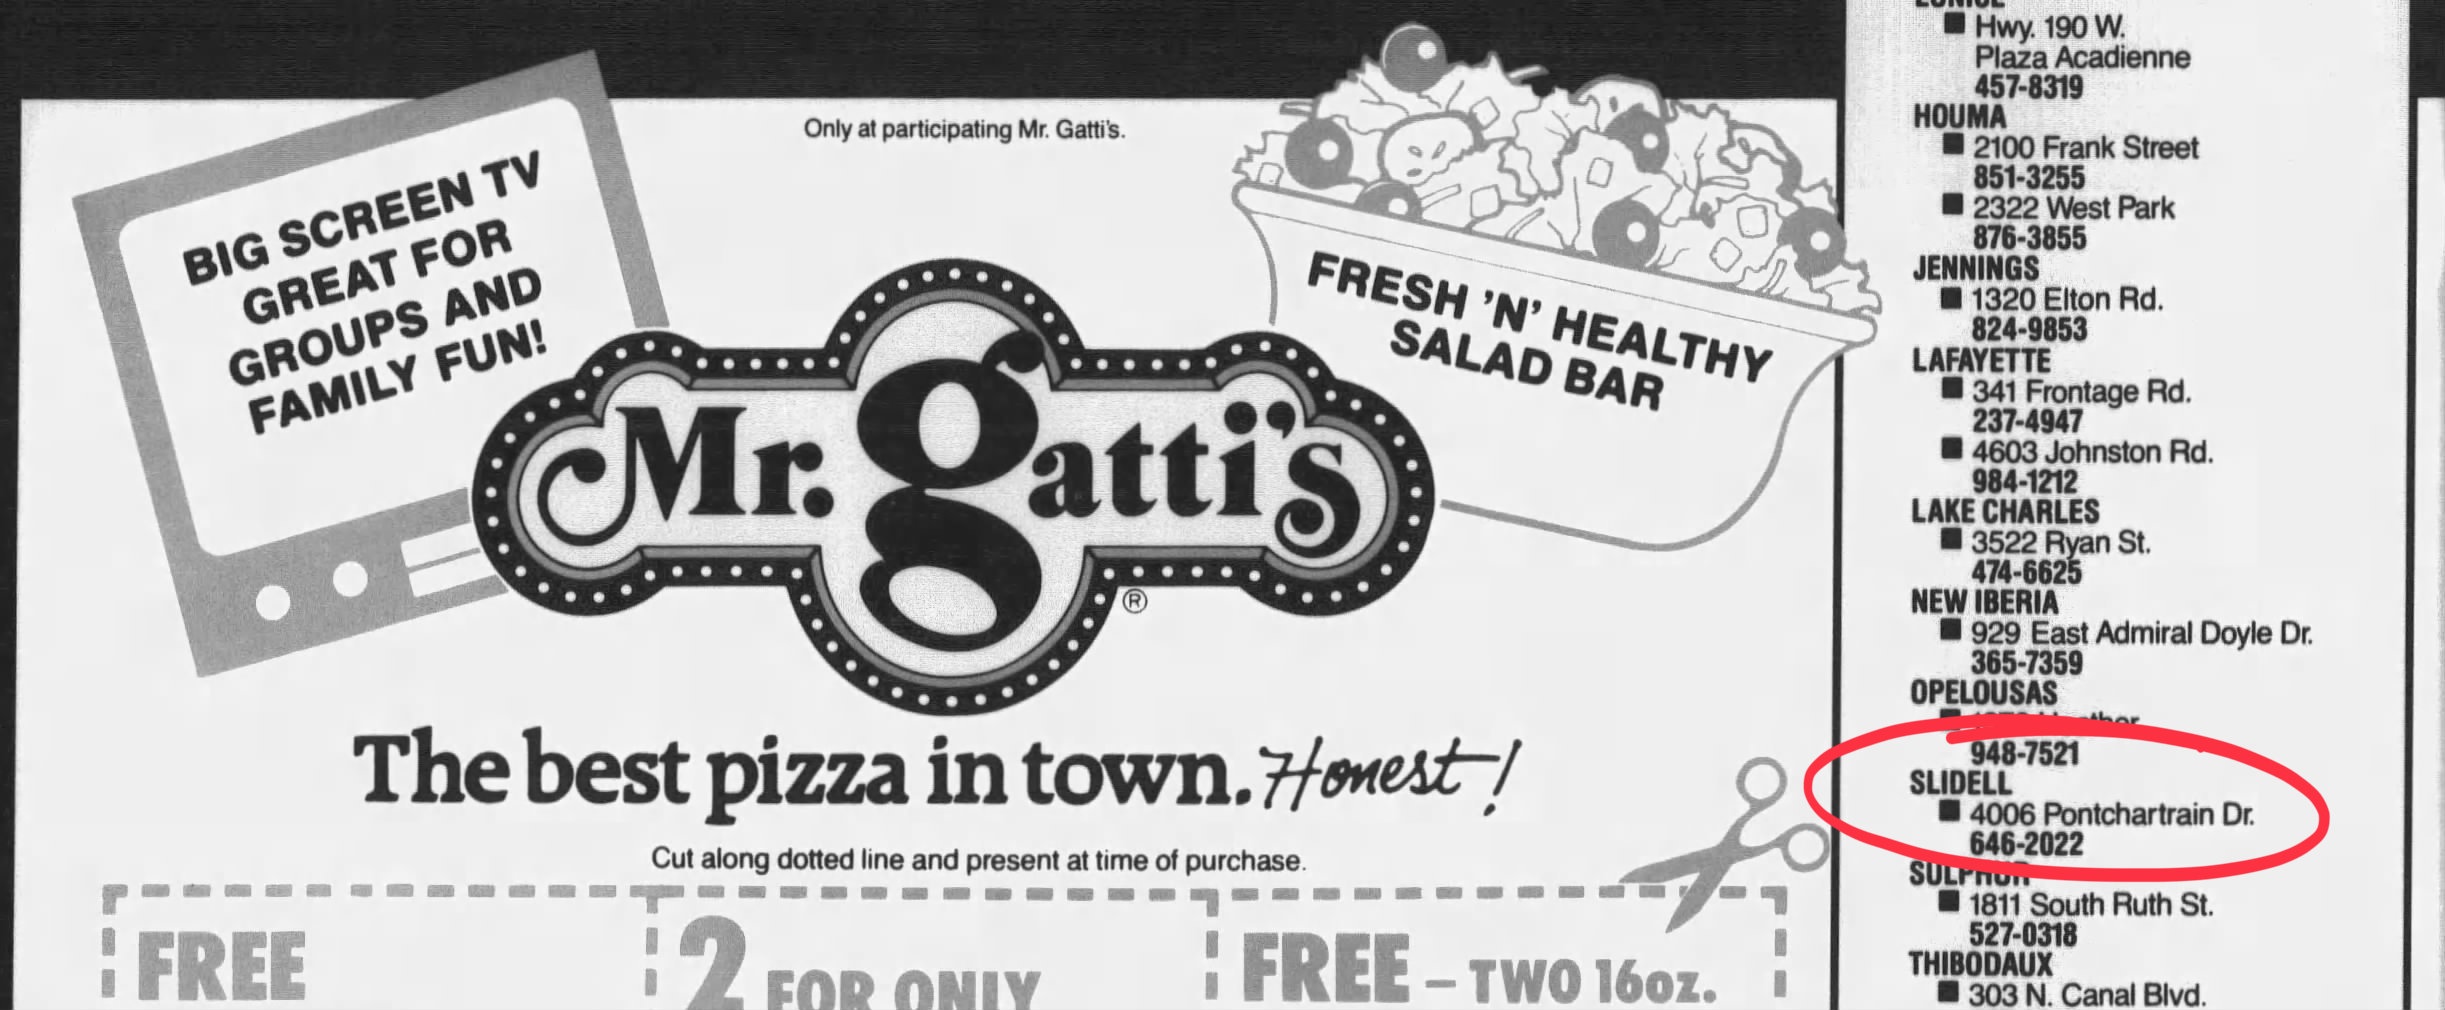 Mr. Gatti's Ad for Louisiana